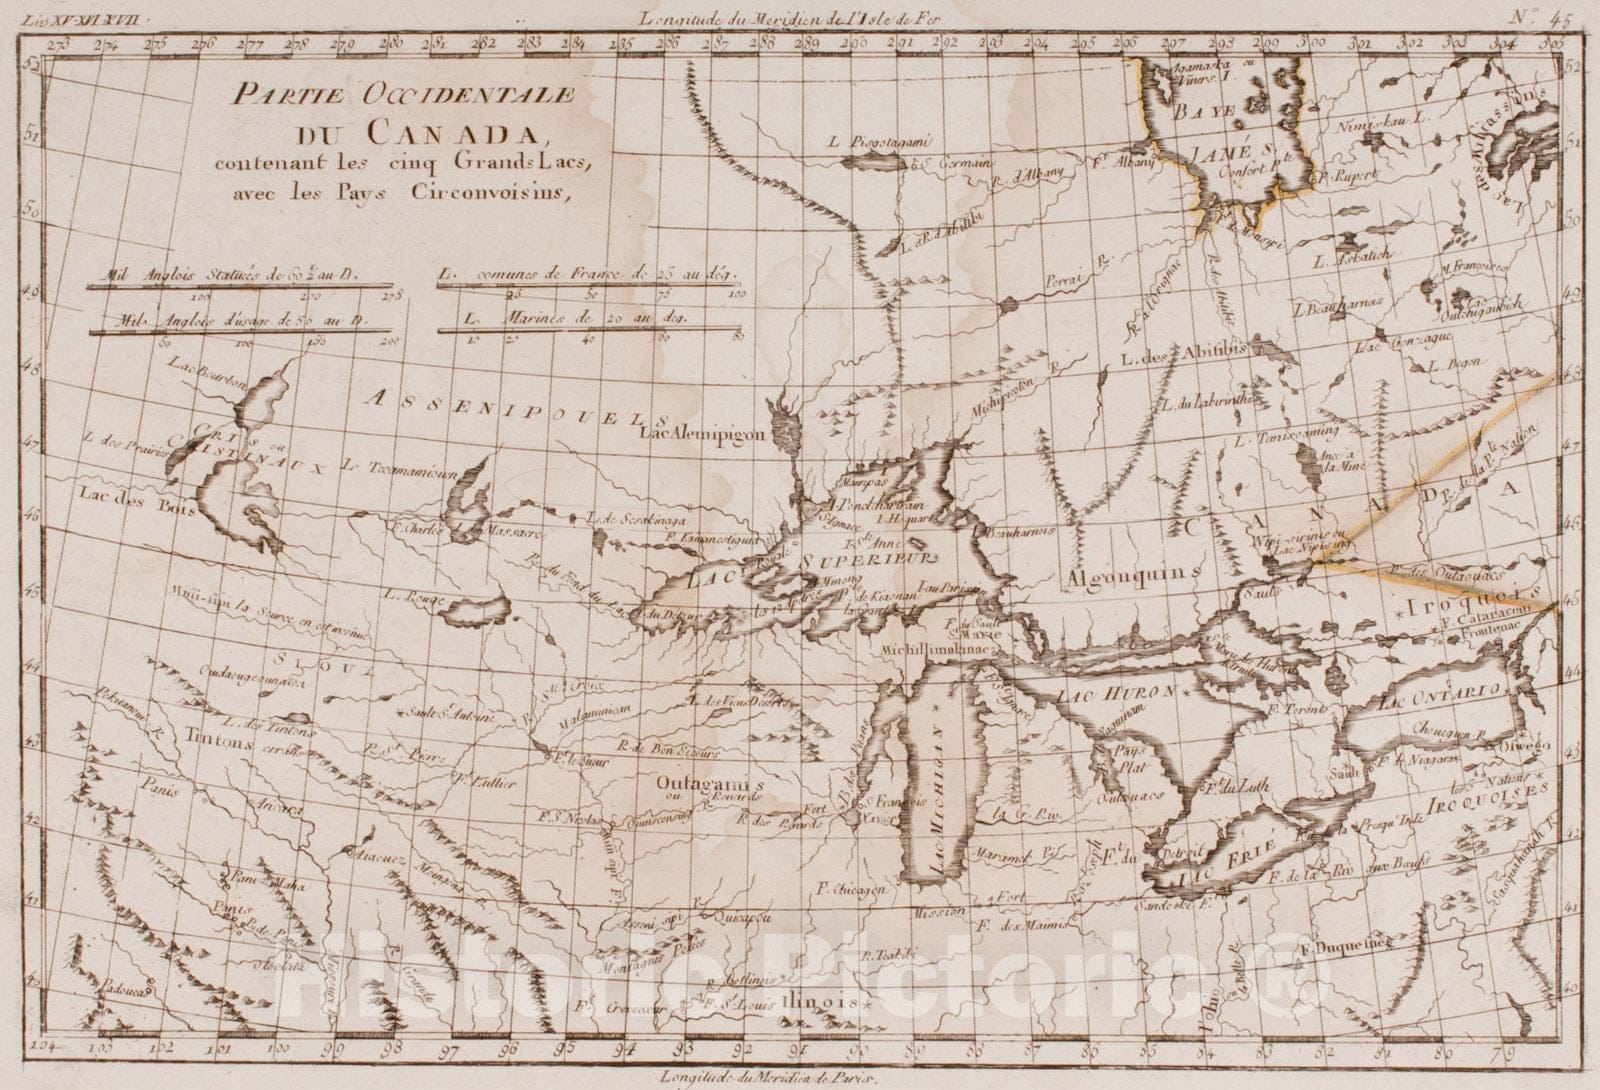 Historical Map, 1780 Partie occidentale du Canada, contenant les cinq Grands Lacs, avec les pays circonvoisins, Vintage Wall Art